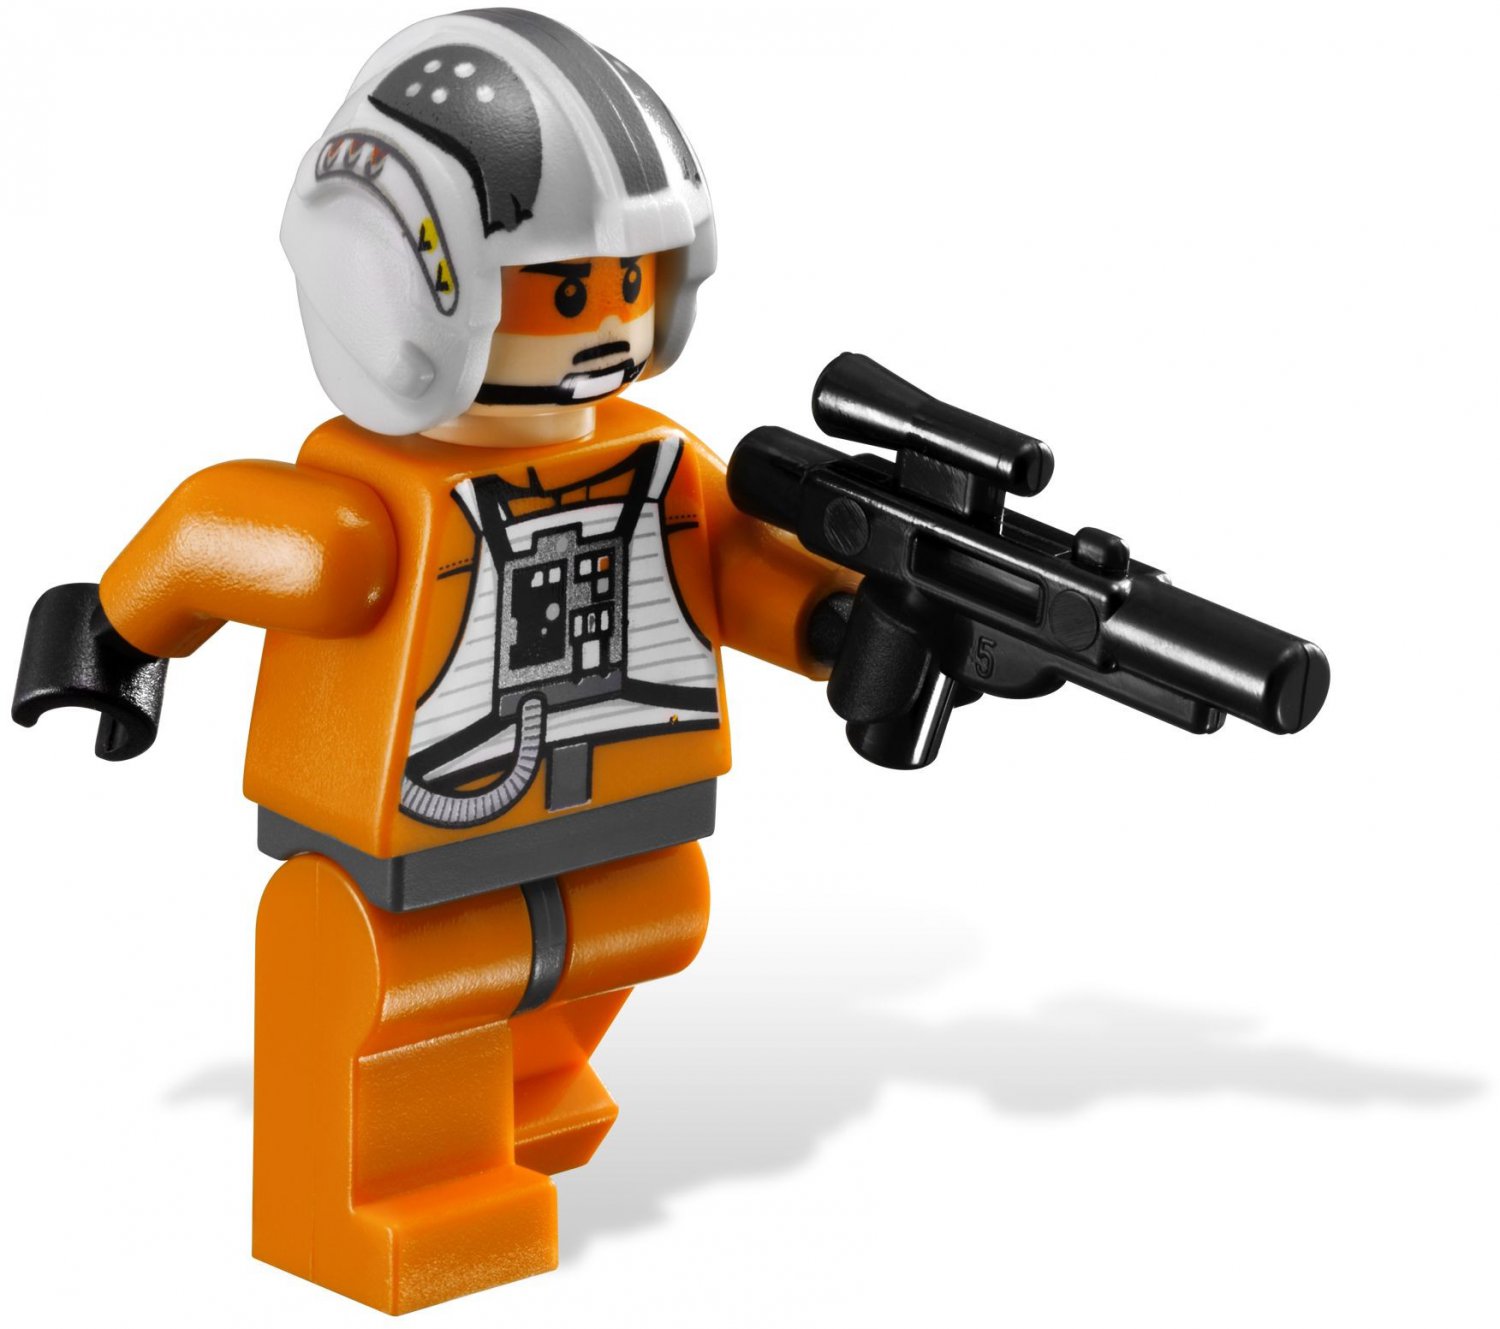 Lego 8084 And 8083 Star Wars Episode V Snowtrooper And Rebel Trooper Battle